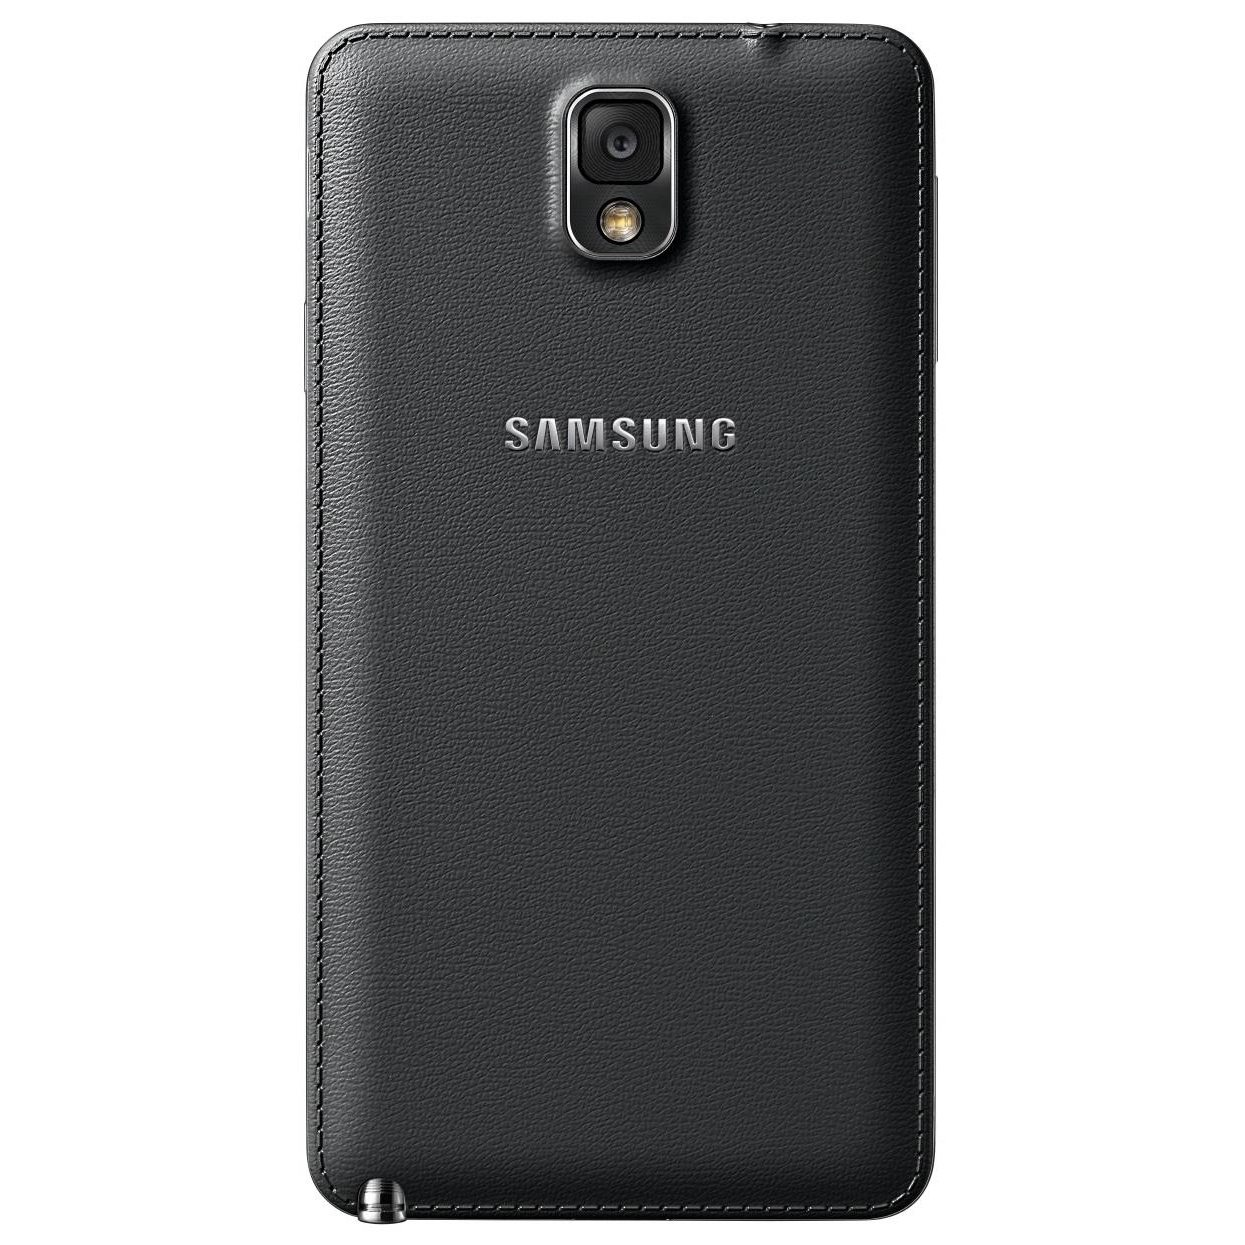 Samsung N9000 Galaxy Note 3 (Black)   - ...